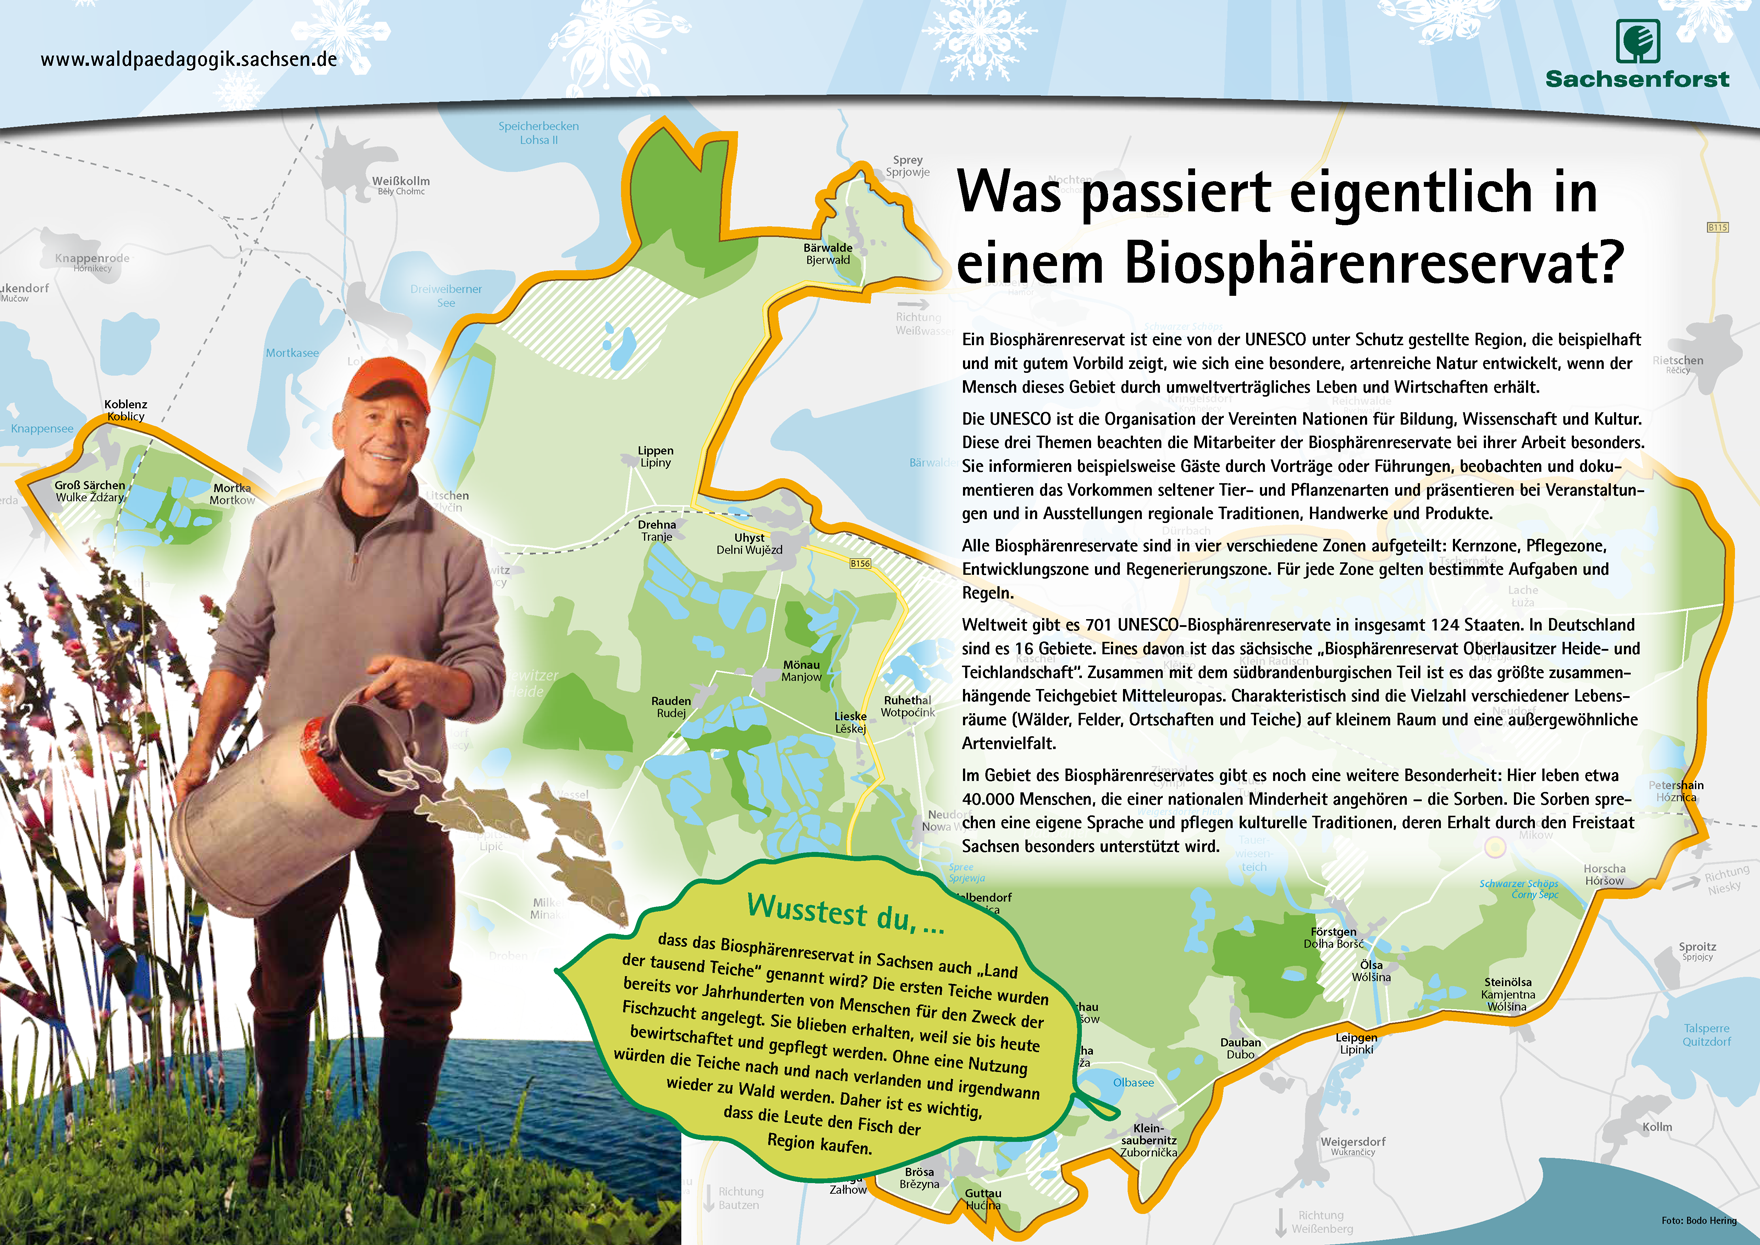 Grafik mit Infos zum Biosphärenreservat